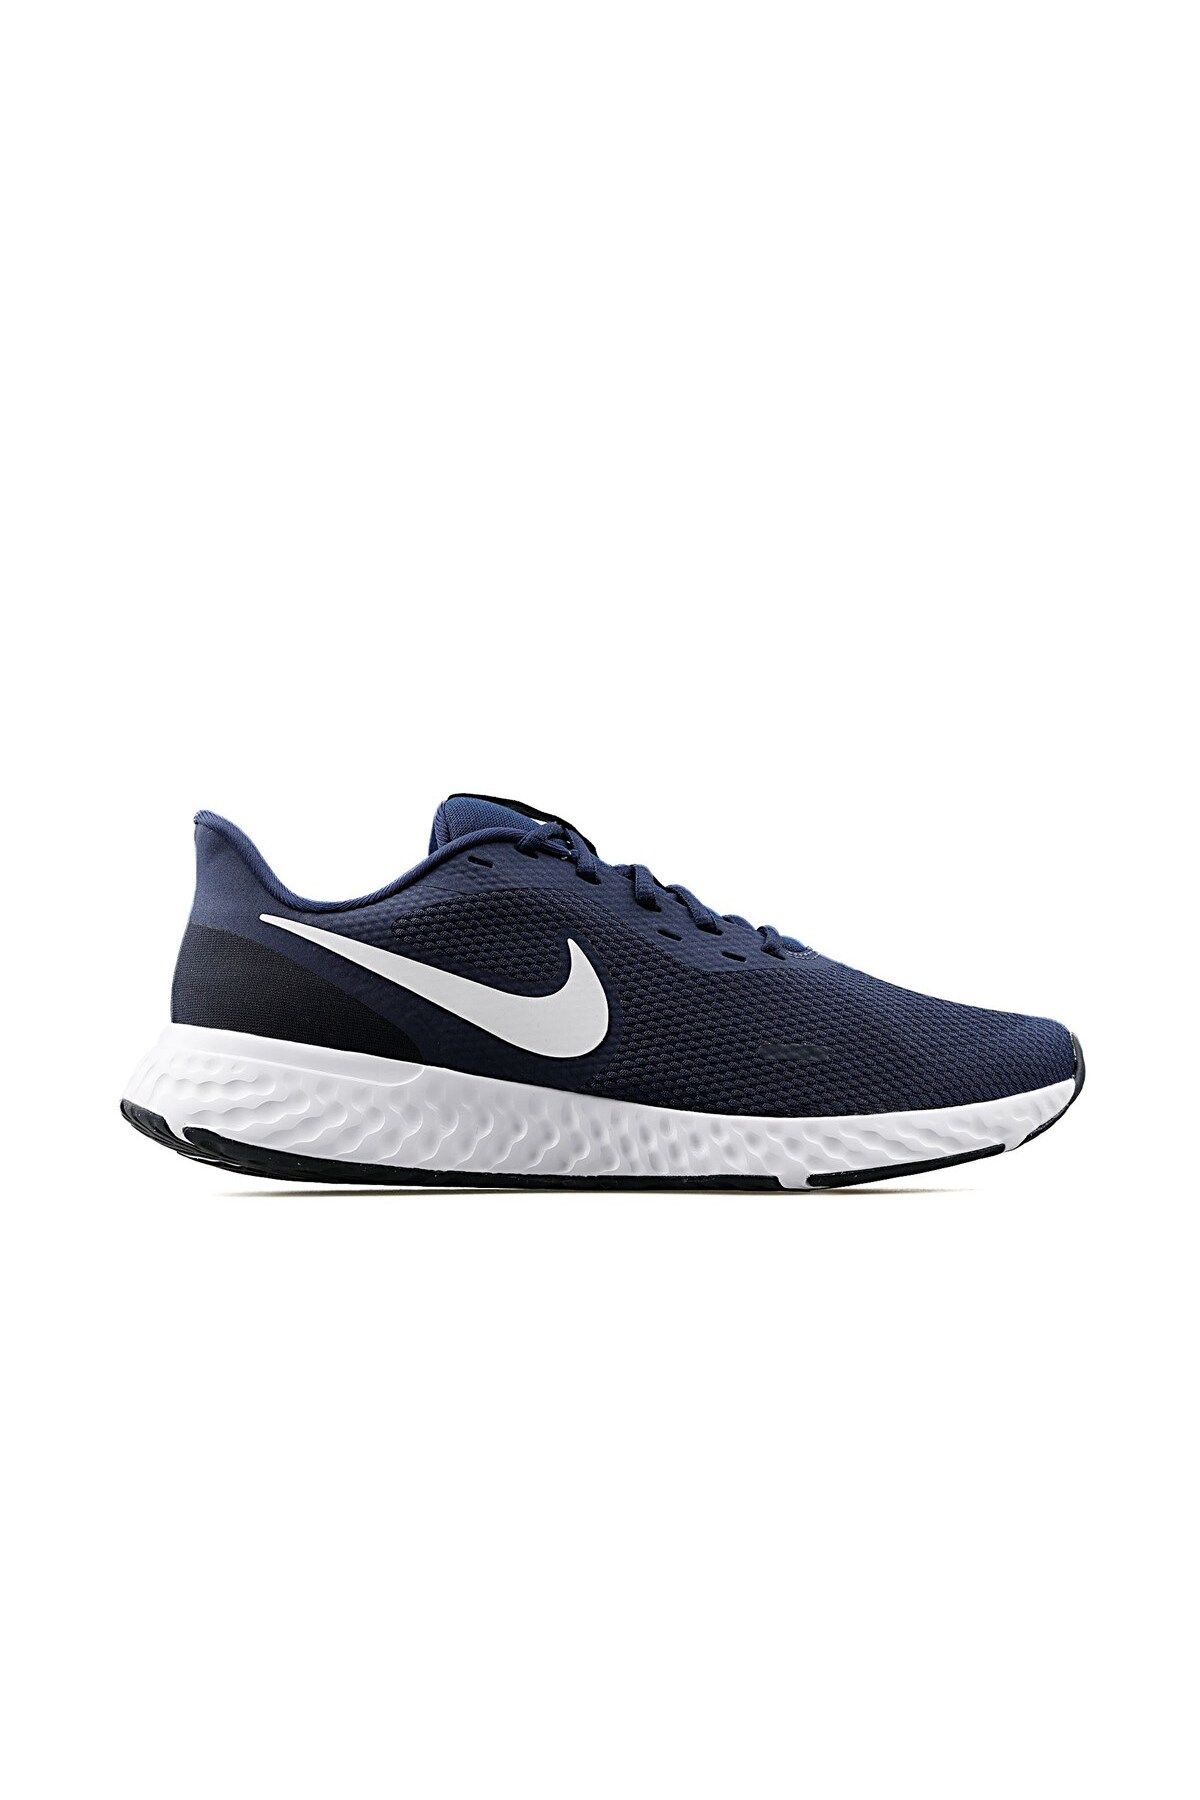 Nike Revolutıon 5 Erkek Günlük Ayakkabı Bq3204-400